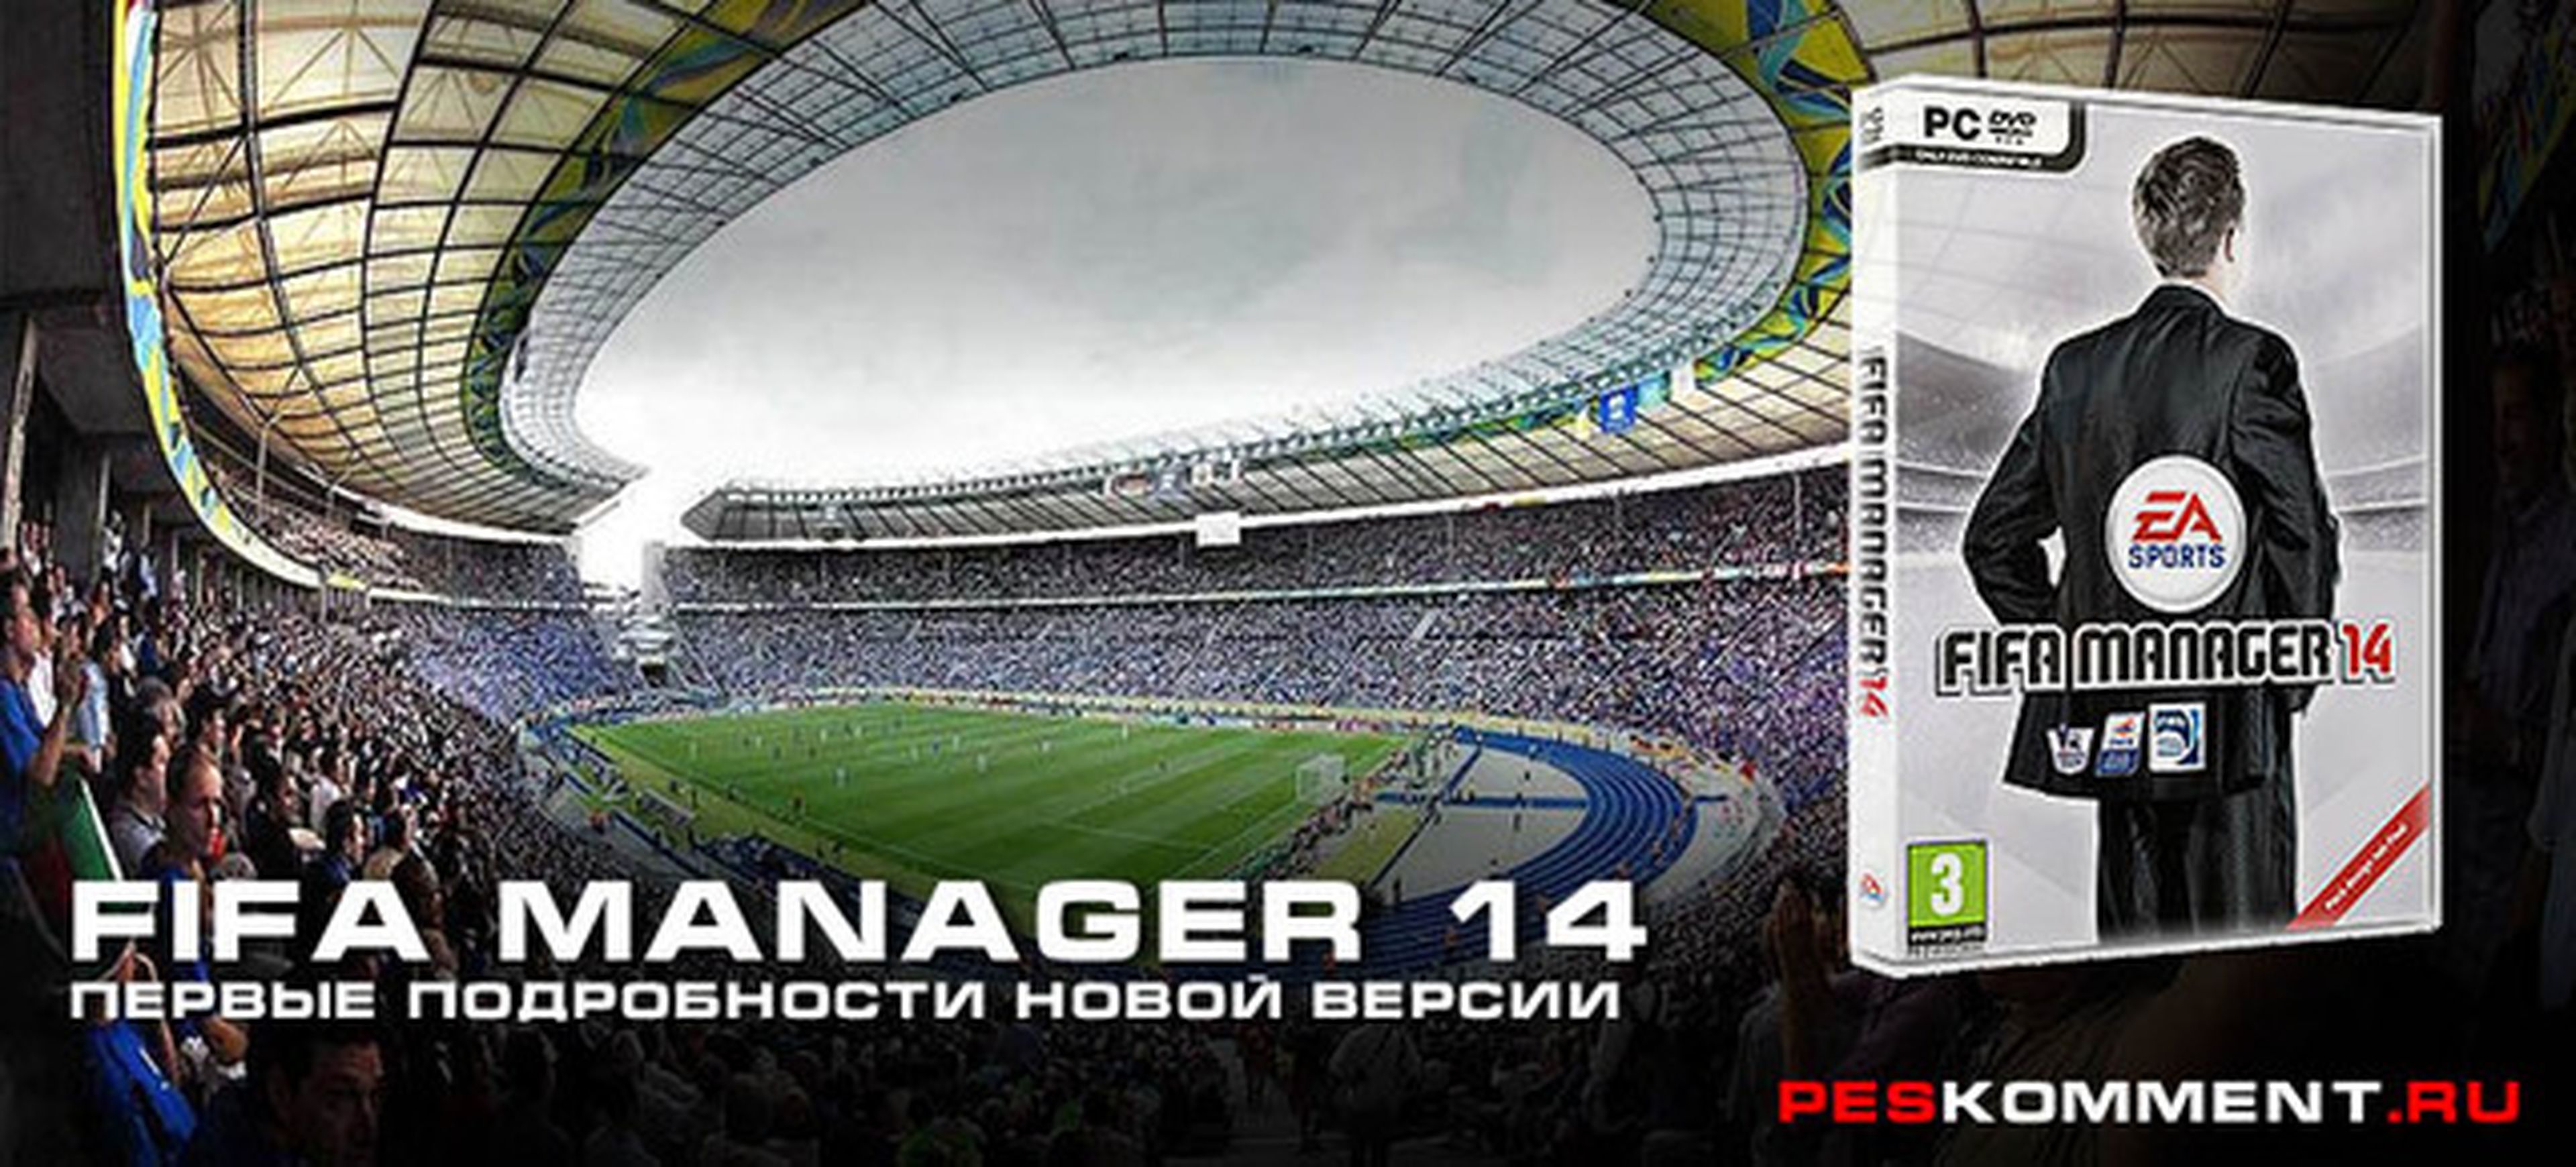 FIFA Manager 14 será el último de la saga